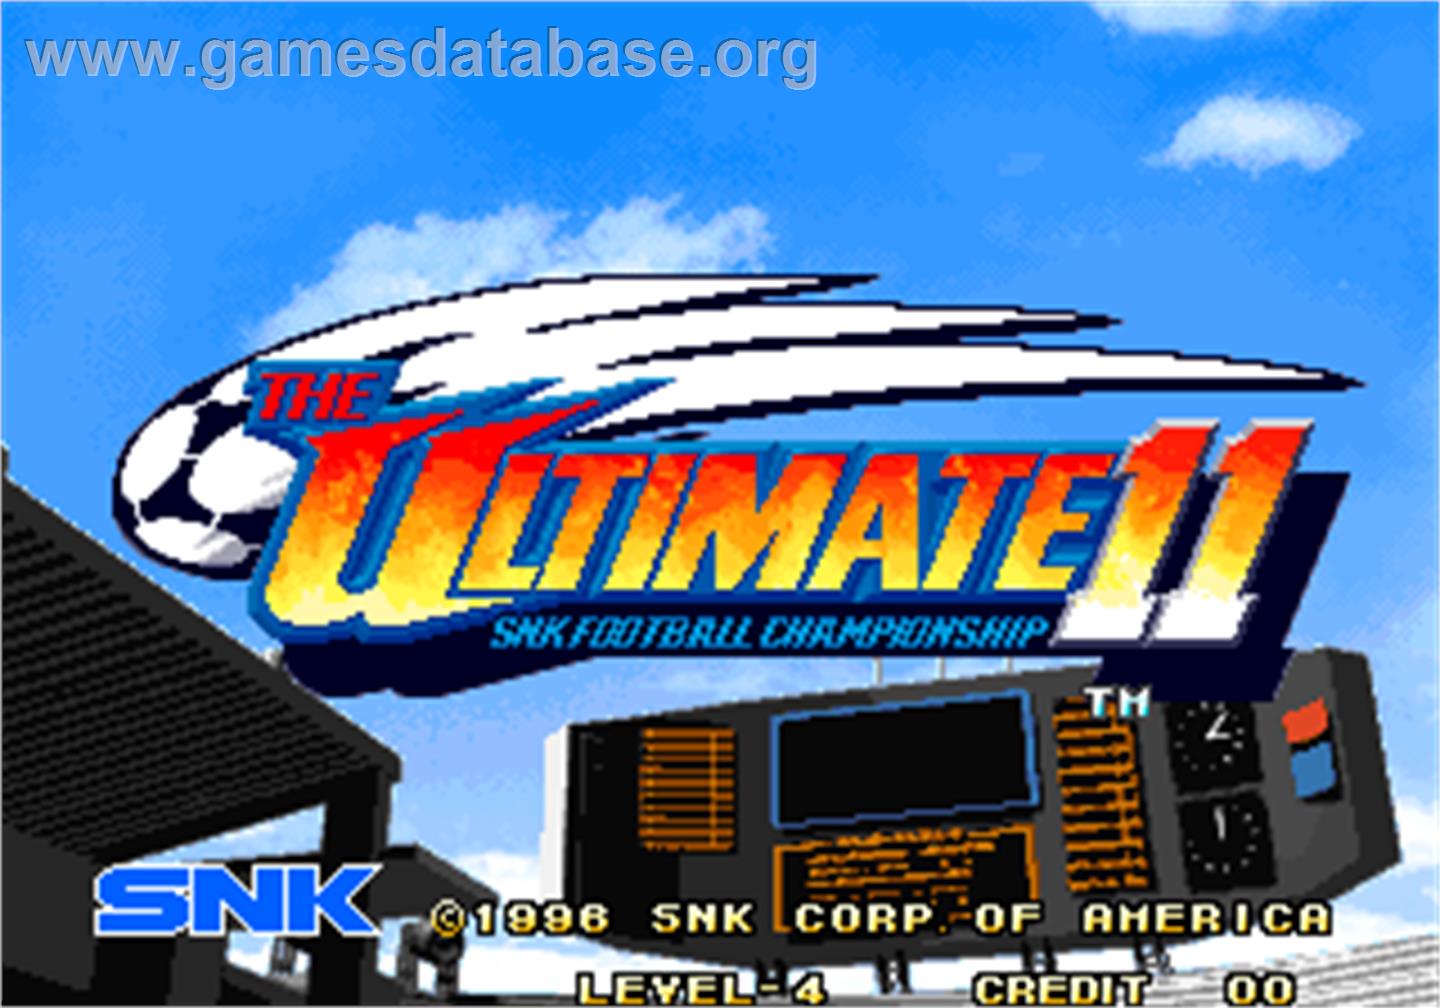 The Ultimate 11 - The SNK Football Championship / Tokuten Ou - Honoo no Libero - Arcade - Artwork - Title Screen